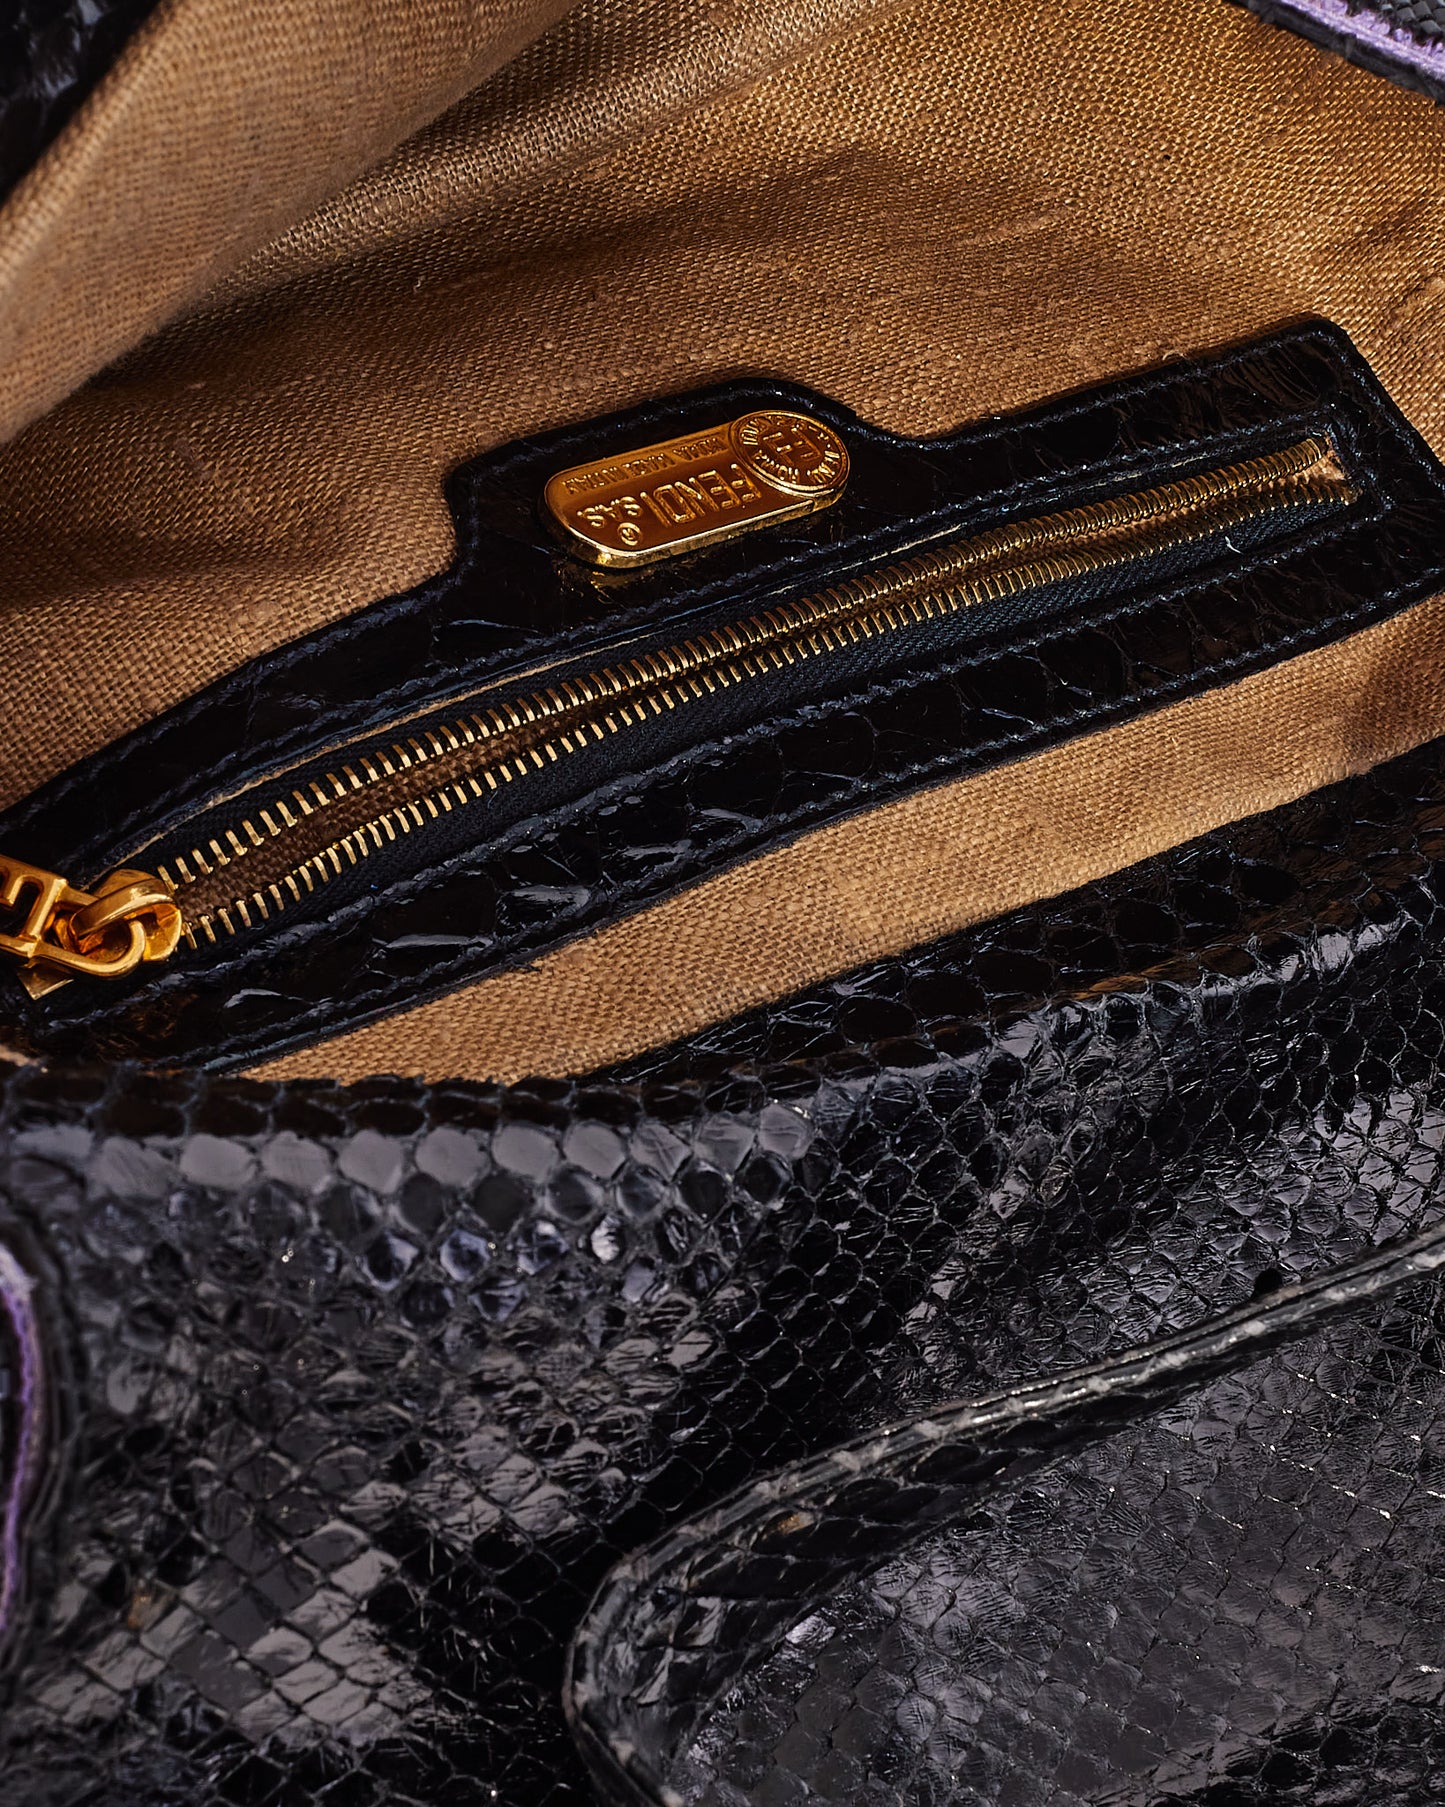 Fendi Vintage Purple & Black Trim Beaded Baguette Shoulder Bag